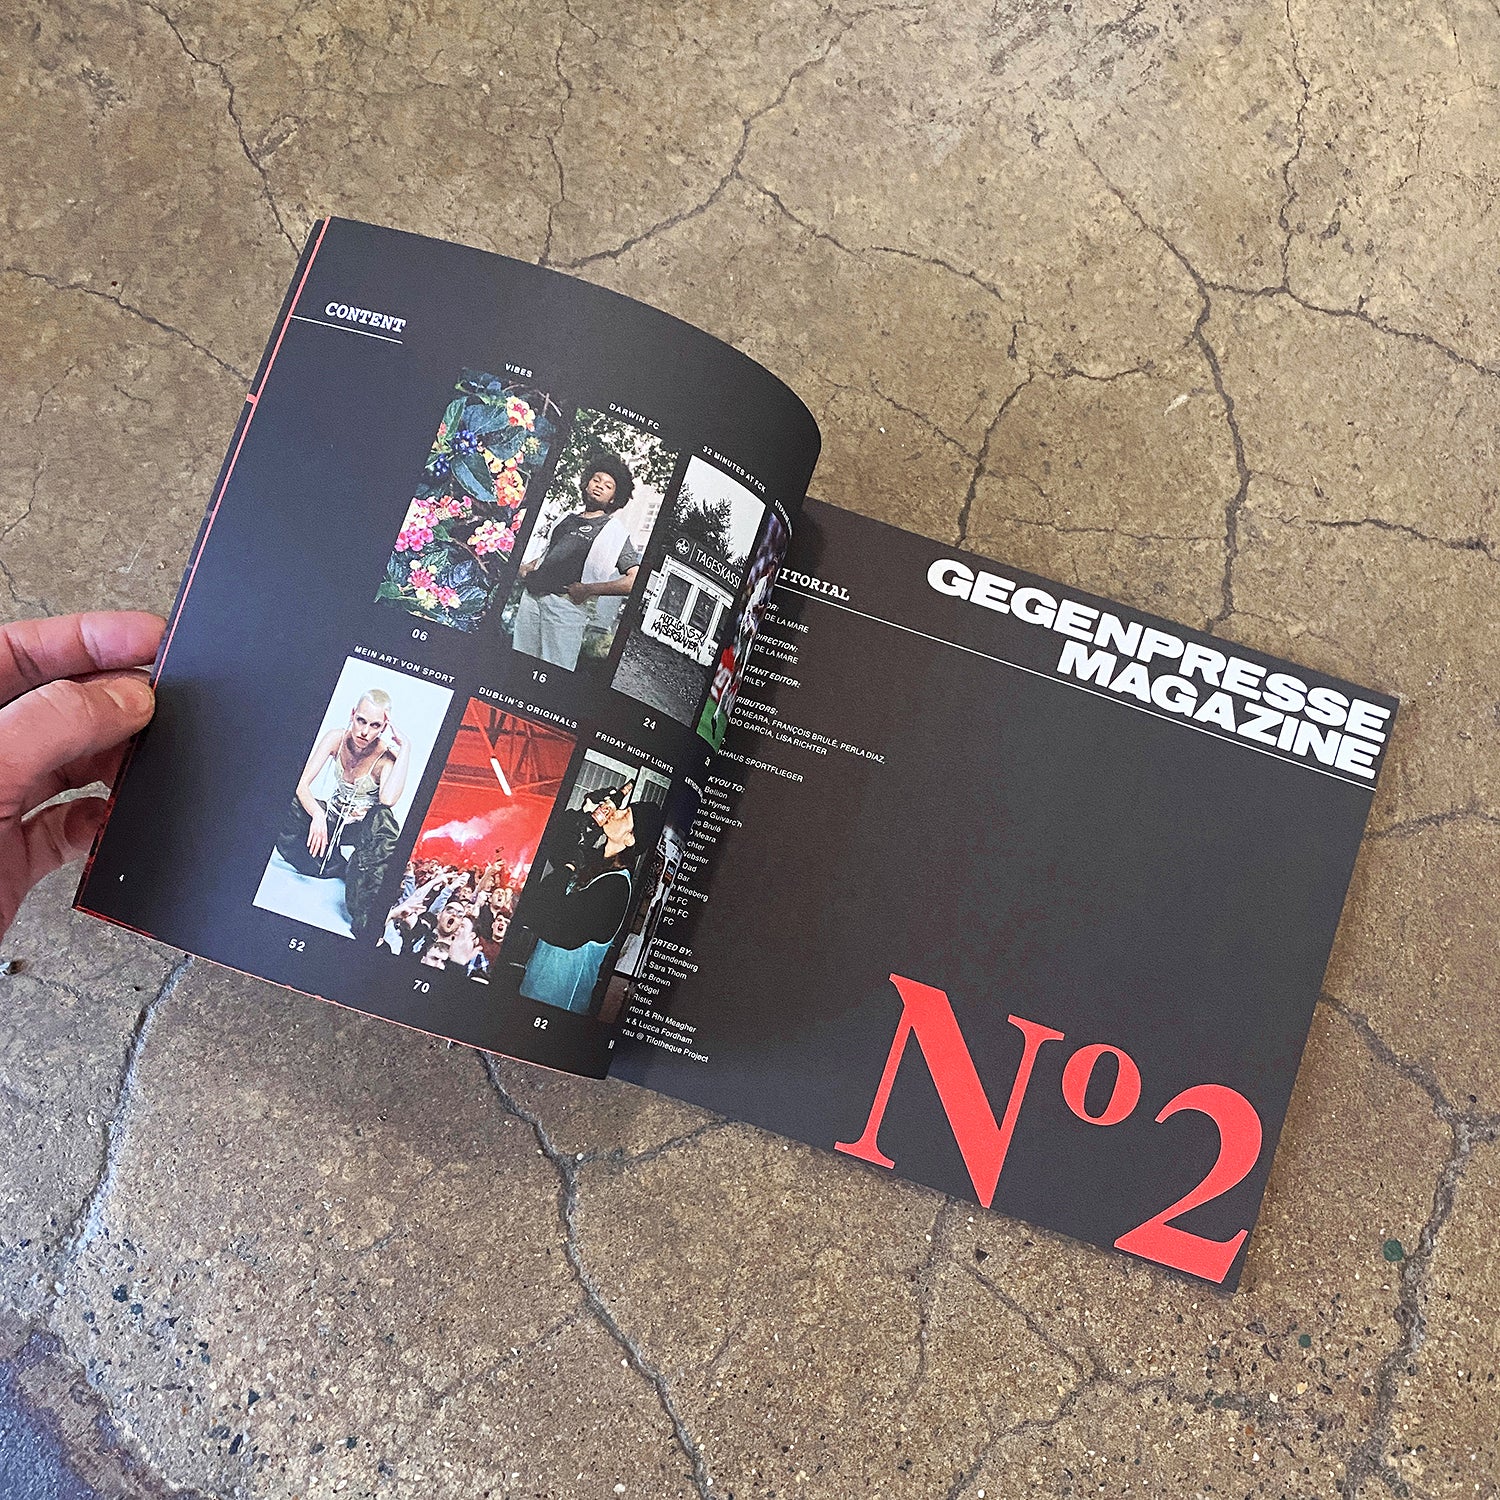 Gegenpresse Magazine: Issue 2